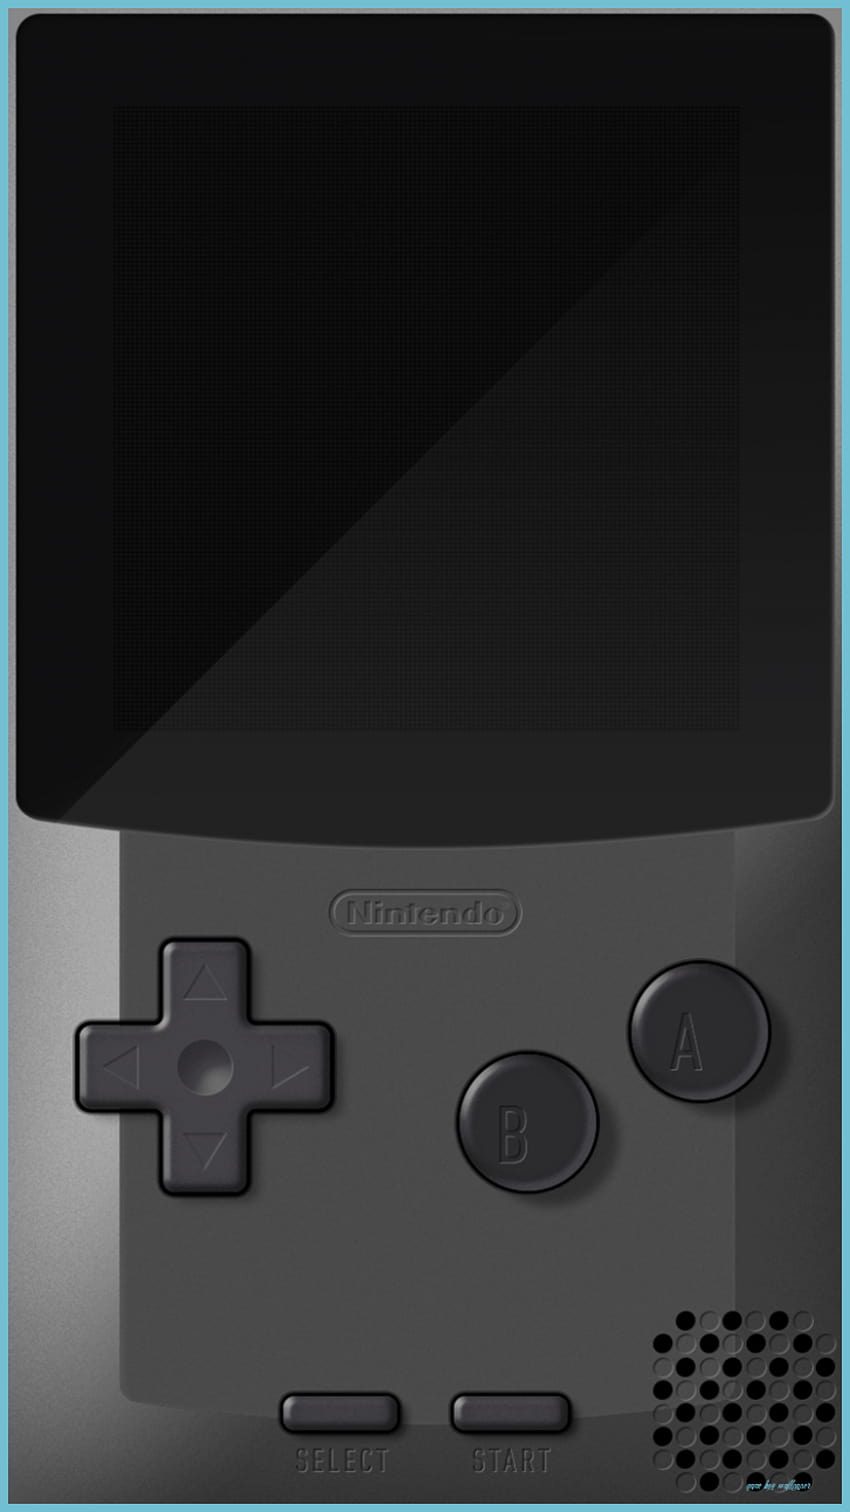 Hình nền Game Boy cho iPhone: Không cần phải chờ đợi, bạn có thể dễ dàng sở hữu hình nền Game Boy cho iPhone của mình ngay bây giờ và khám phá hết những thế giới khác nhau cùng trò chơi huyền thoại.